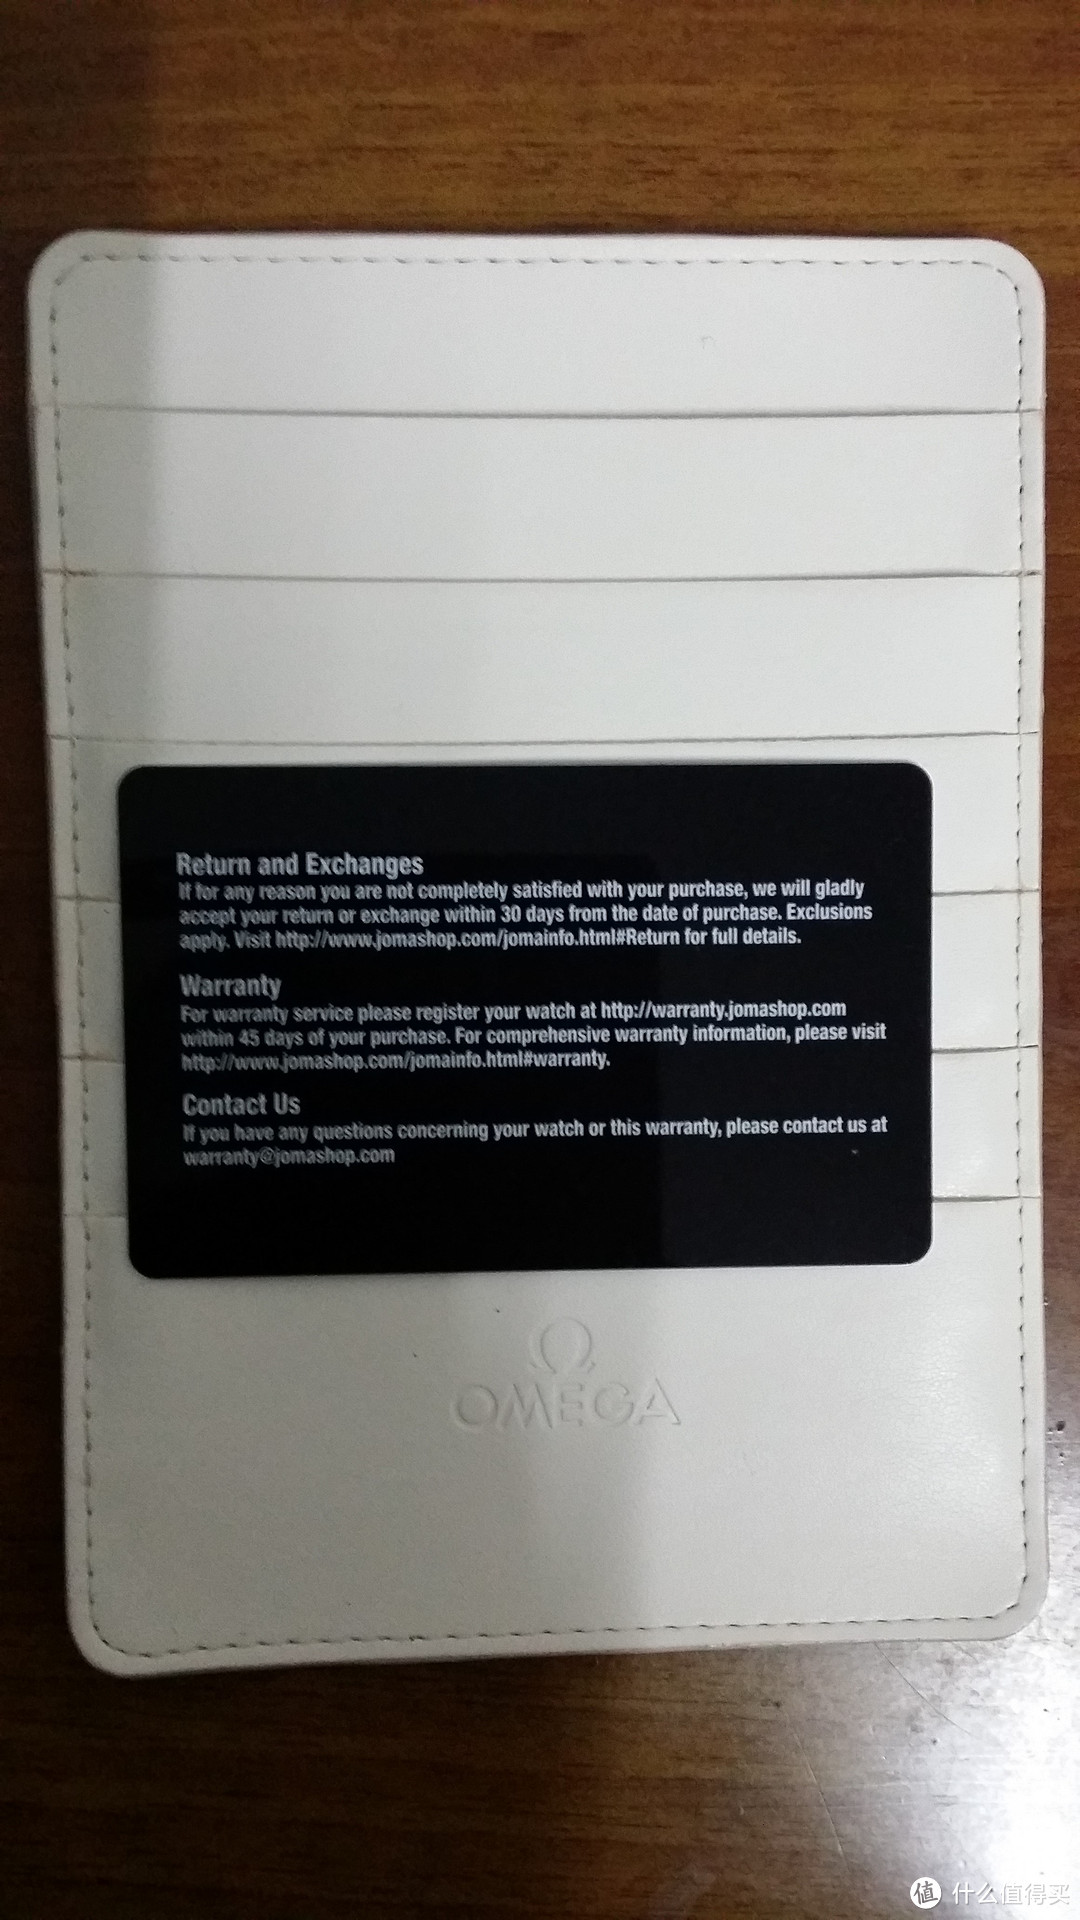 Omega 欧米茄 碟飞系列 男款自动机械腕表 4374.31